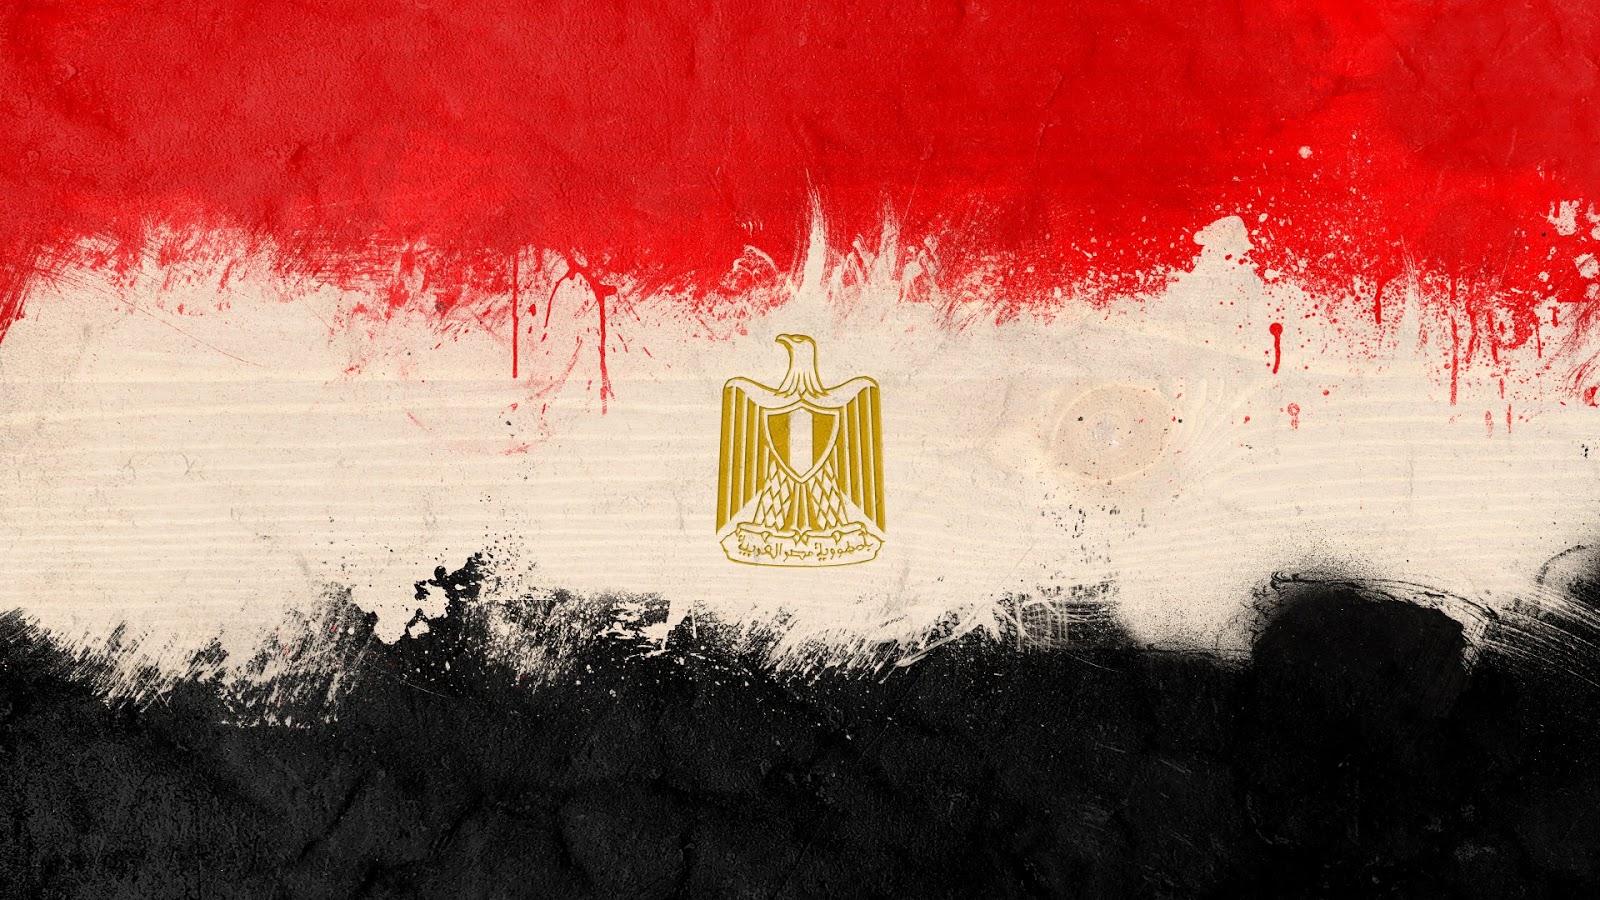   أحداث تشهدها مصر اليوم الخميس